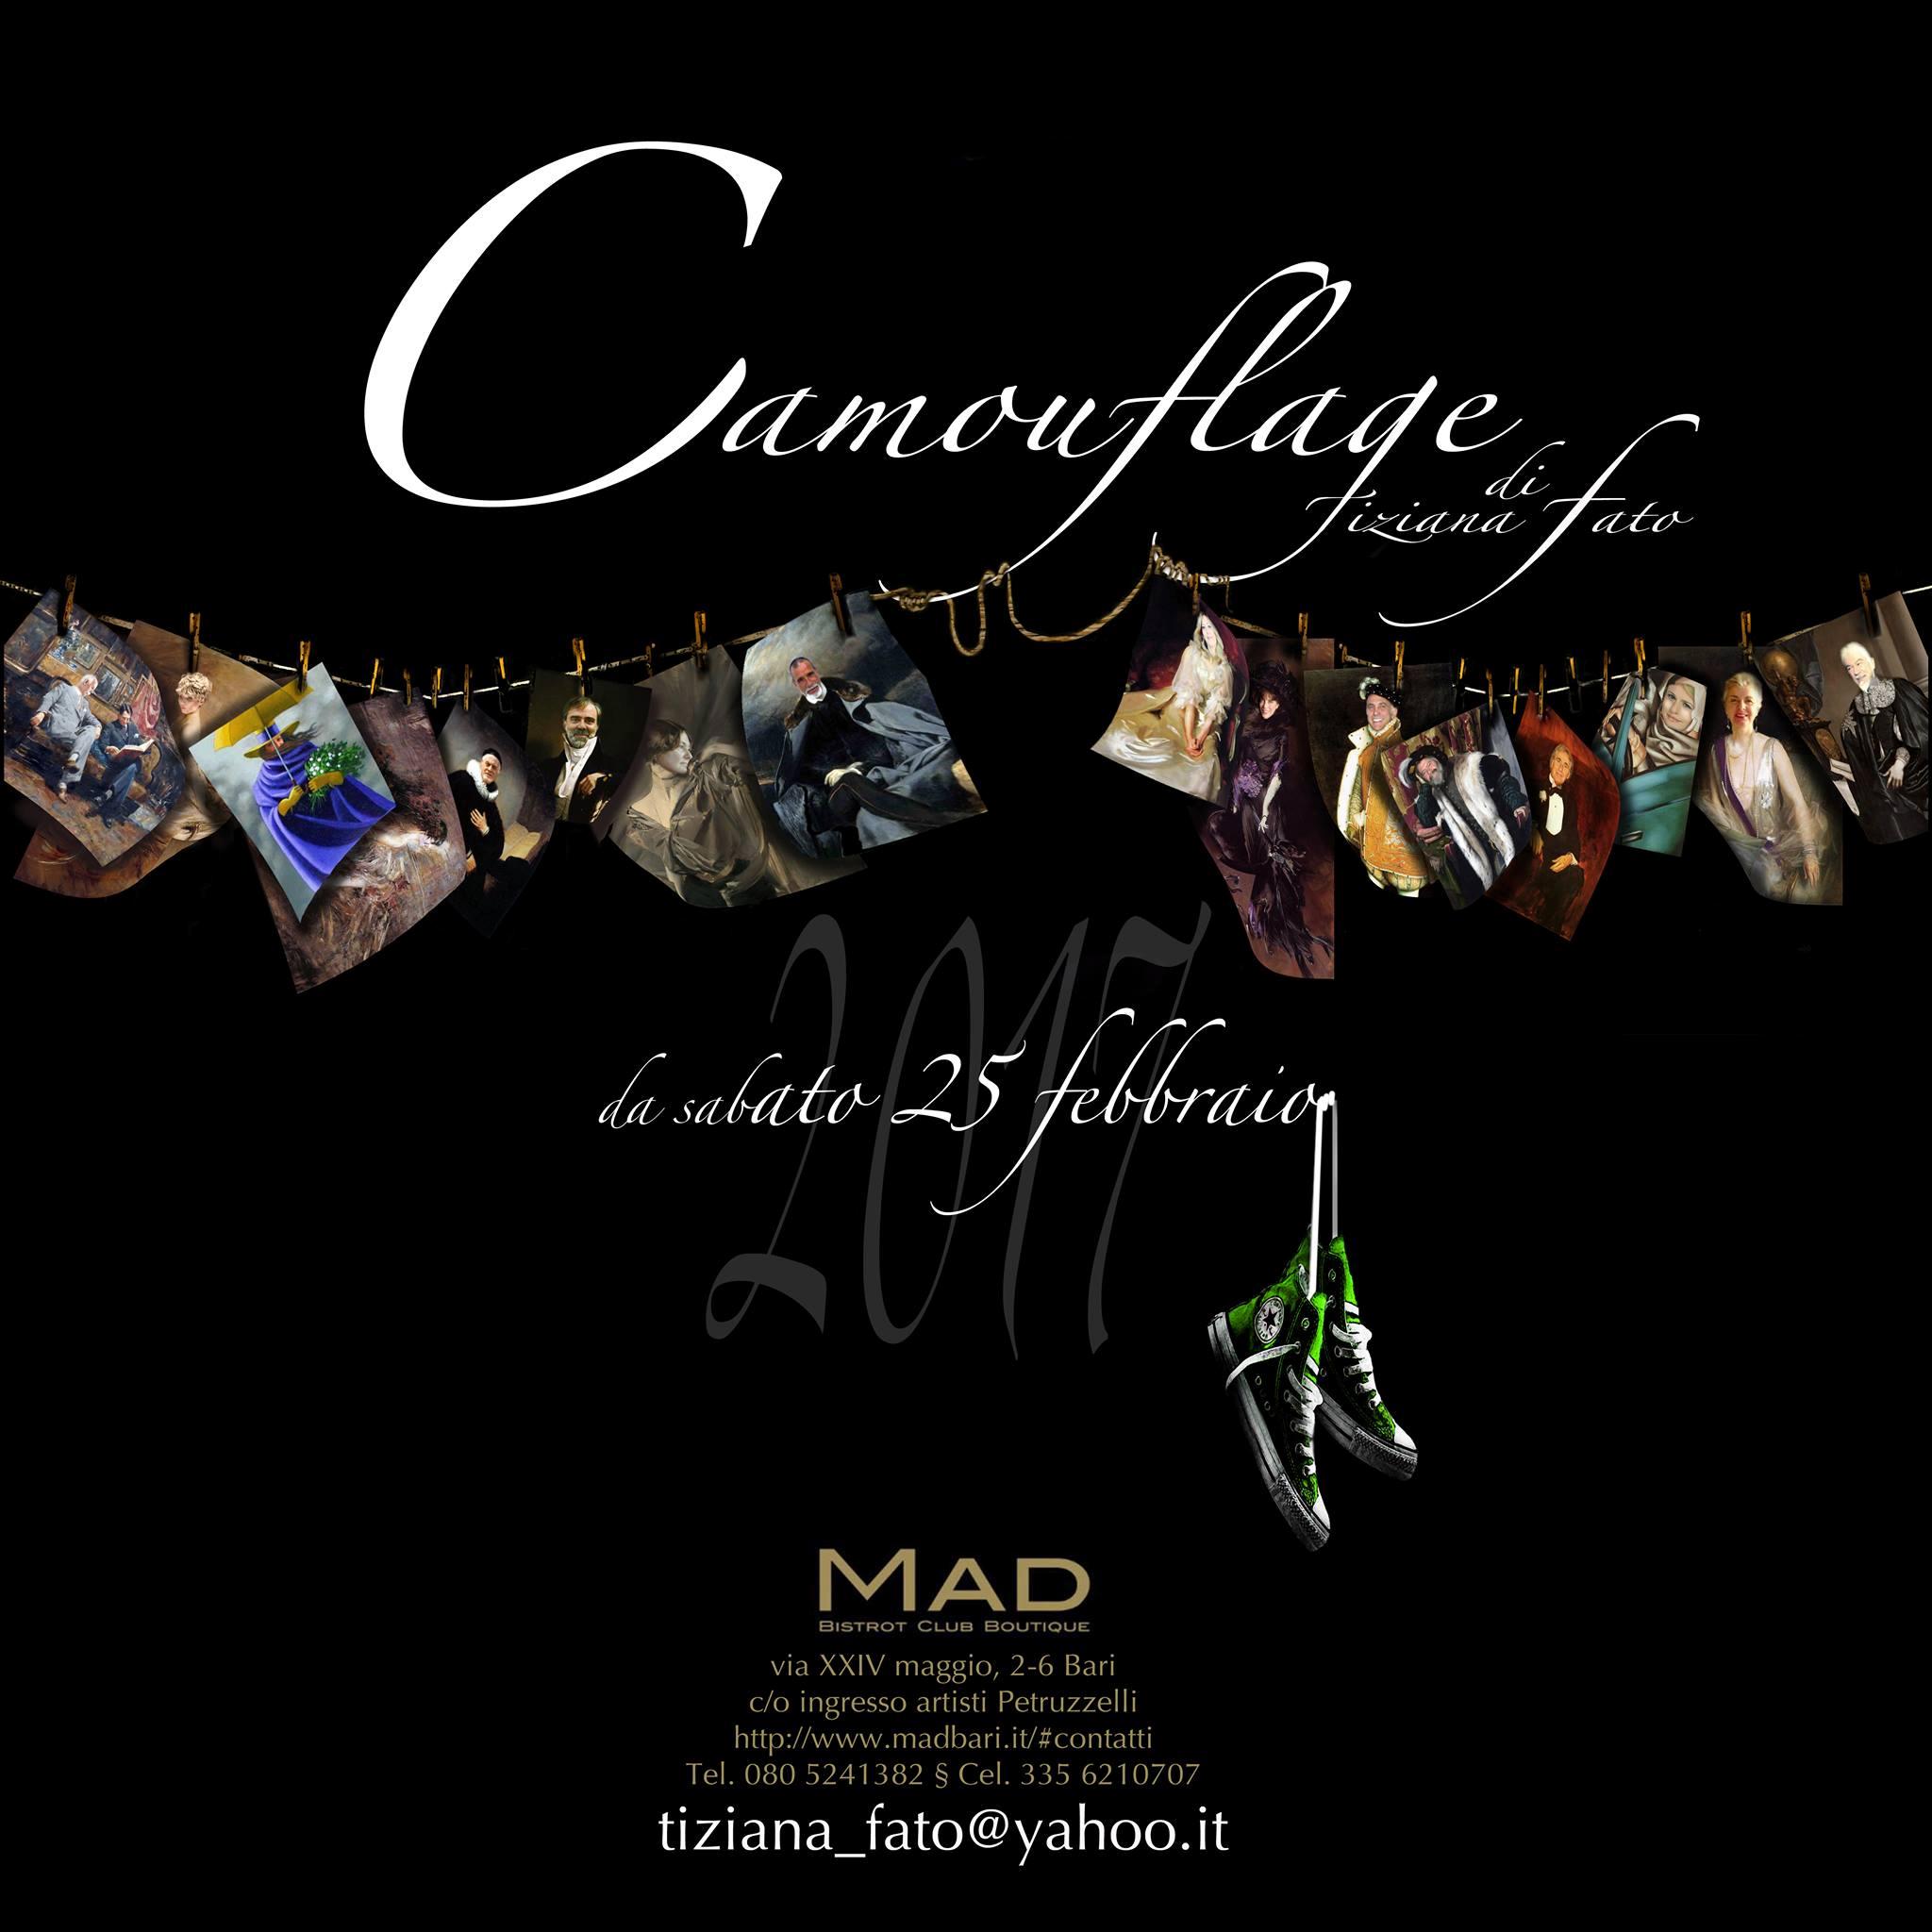 Bari. MAD CLUB, inaugurazione della mostra “Camouflage – The new collection” di Tiziana Fato